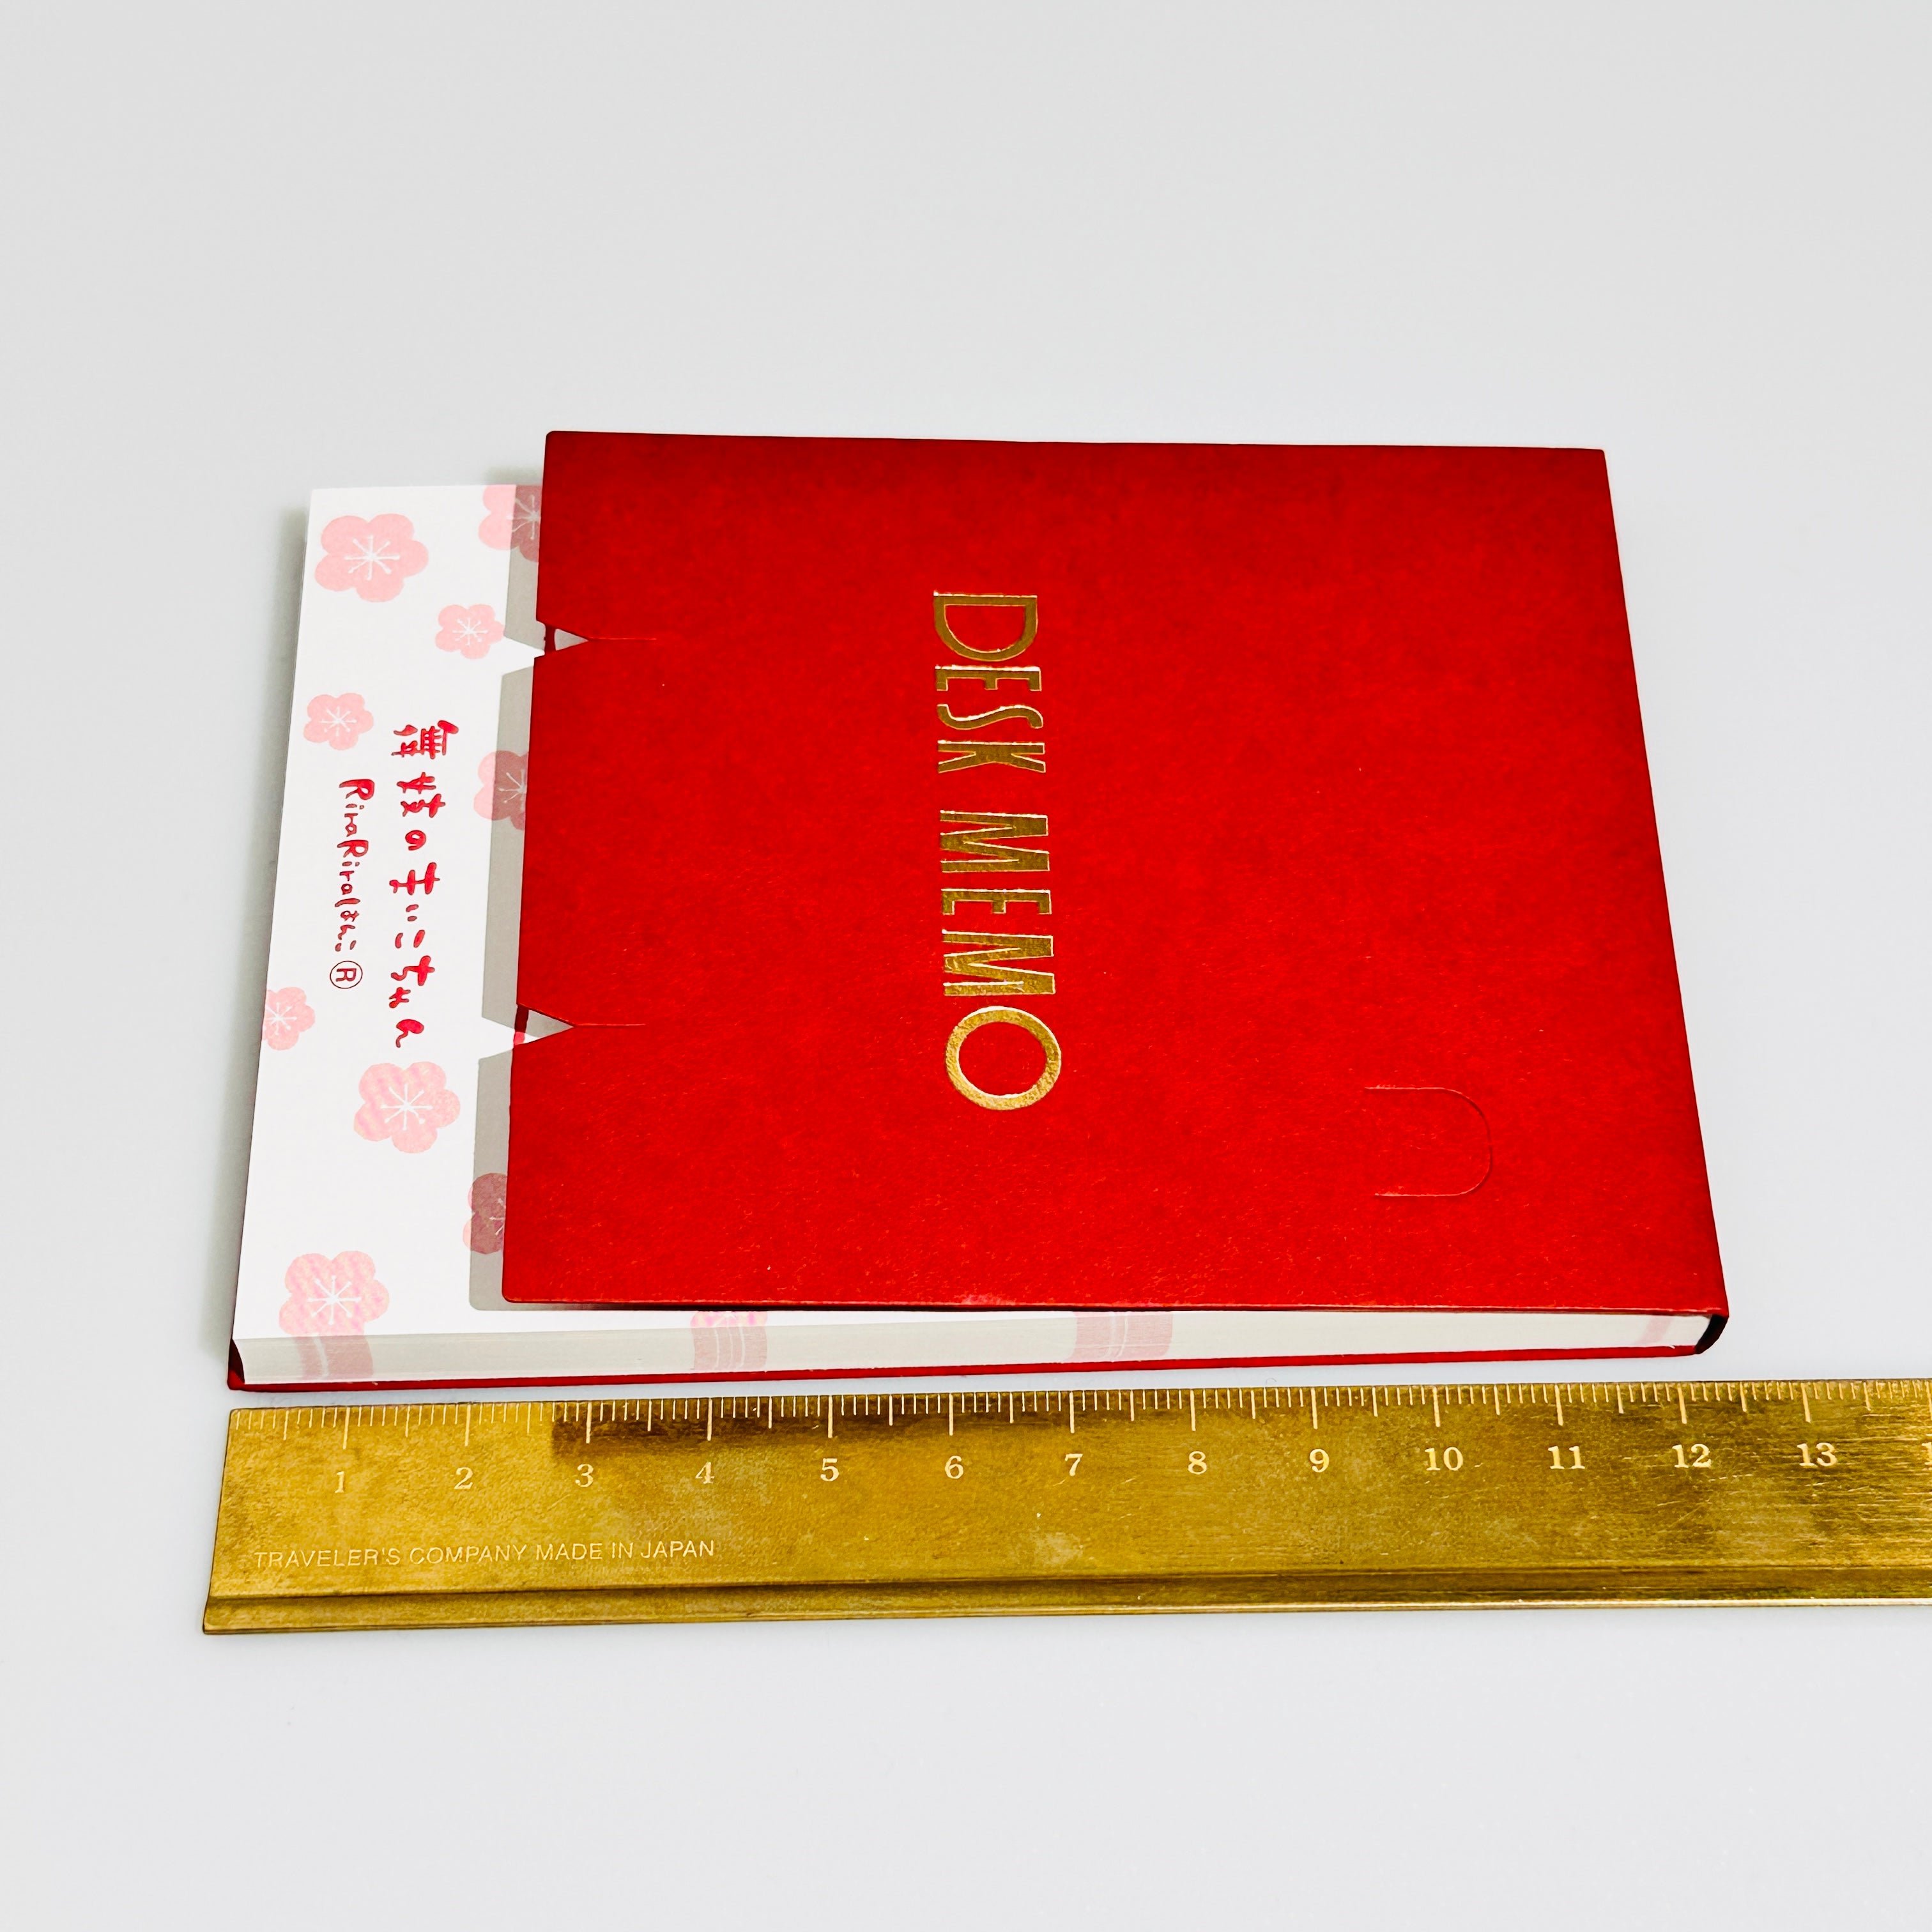 Maiko-chan Memo Pad 100 Sheets